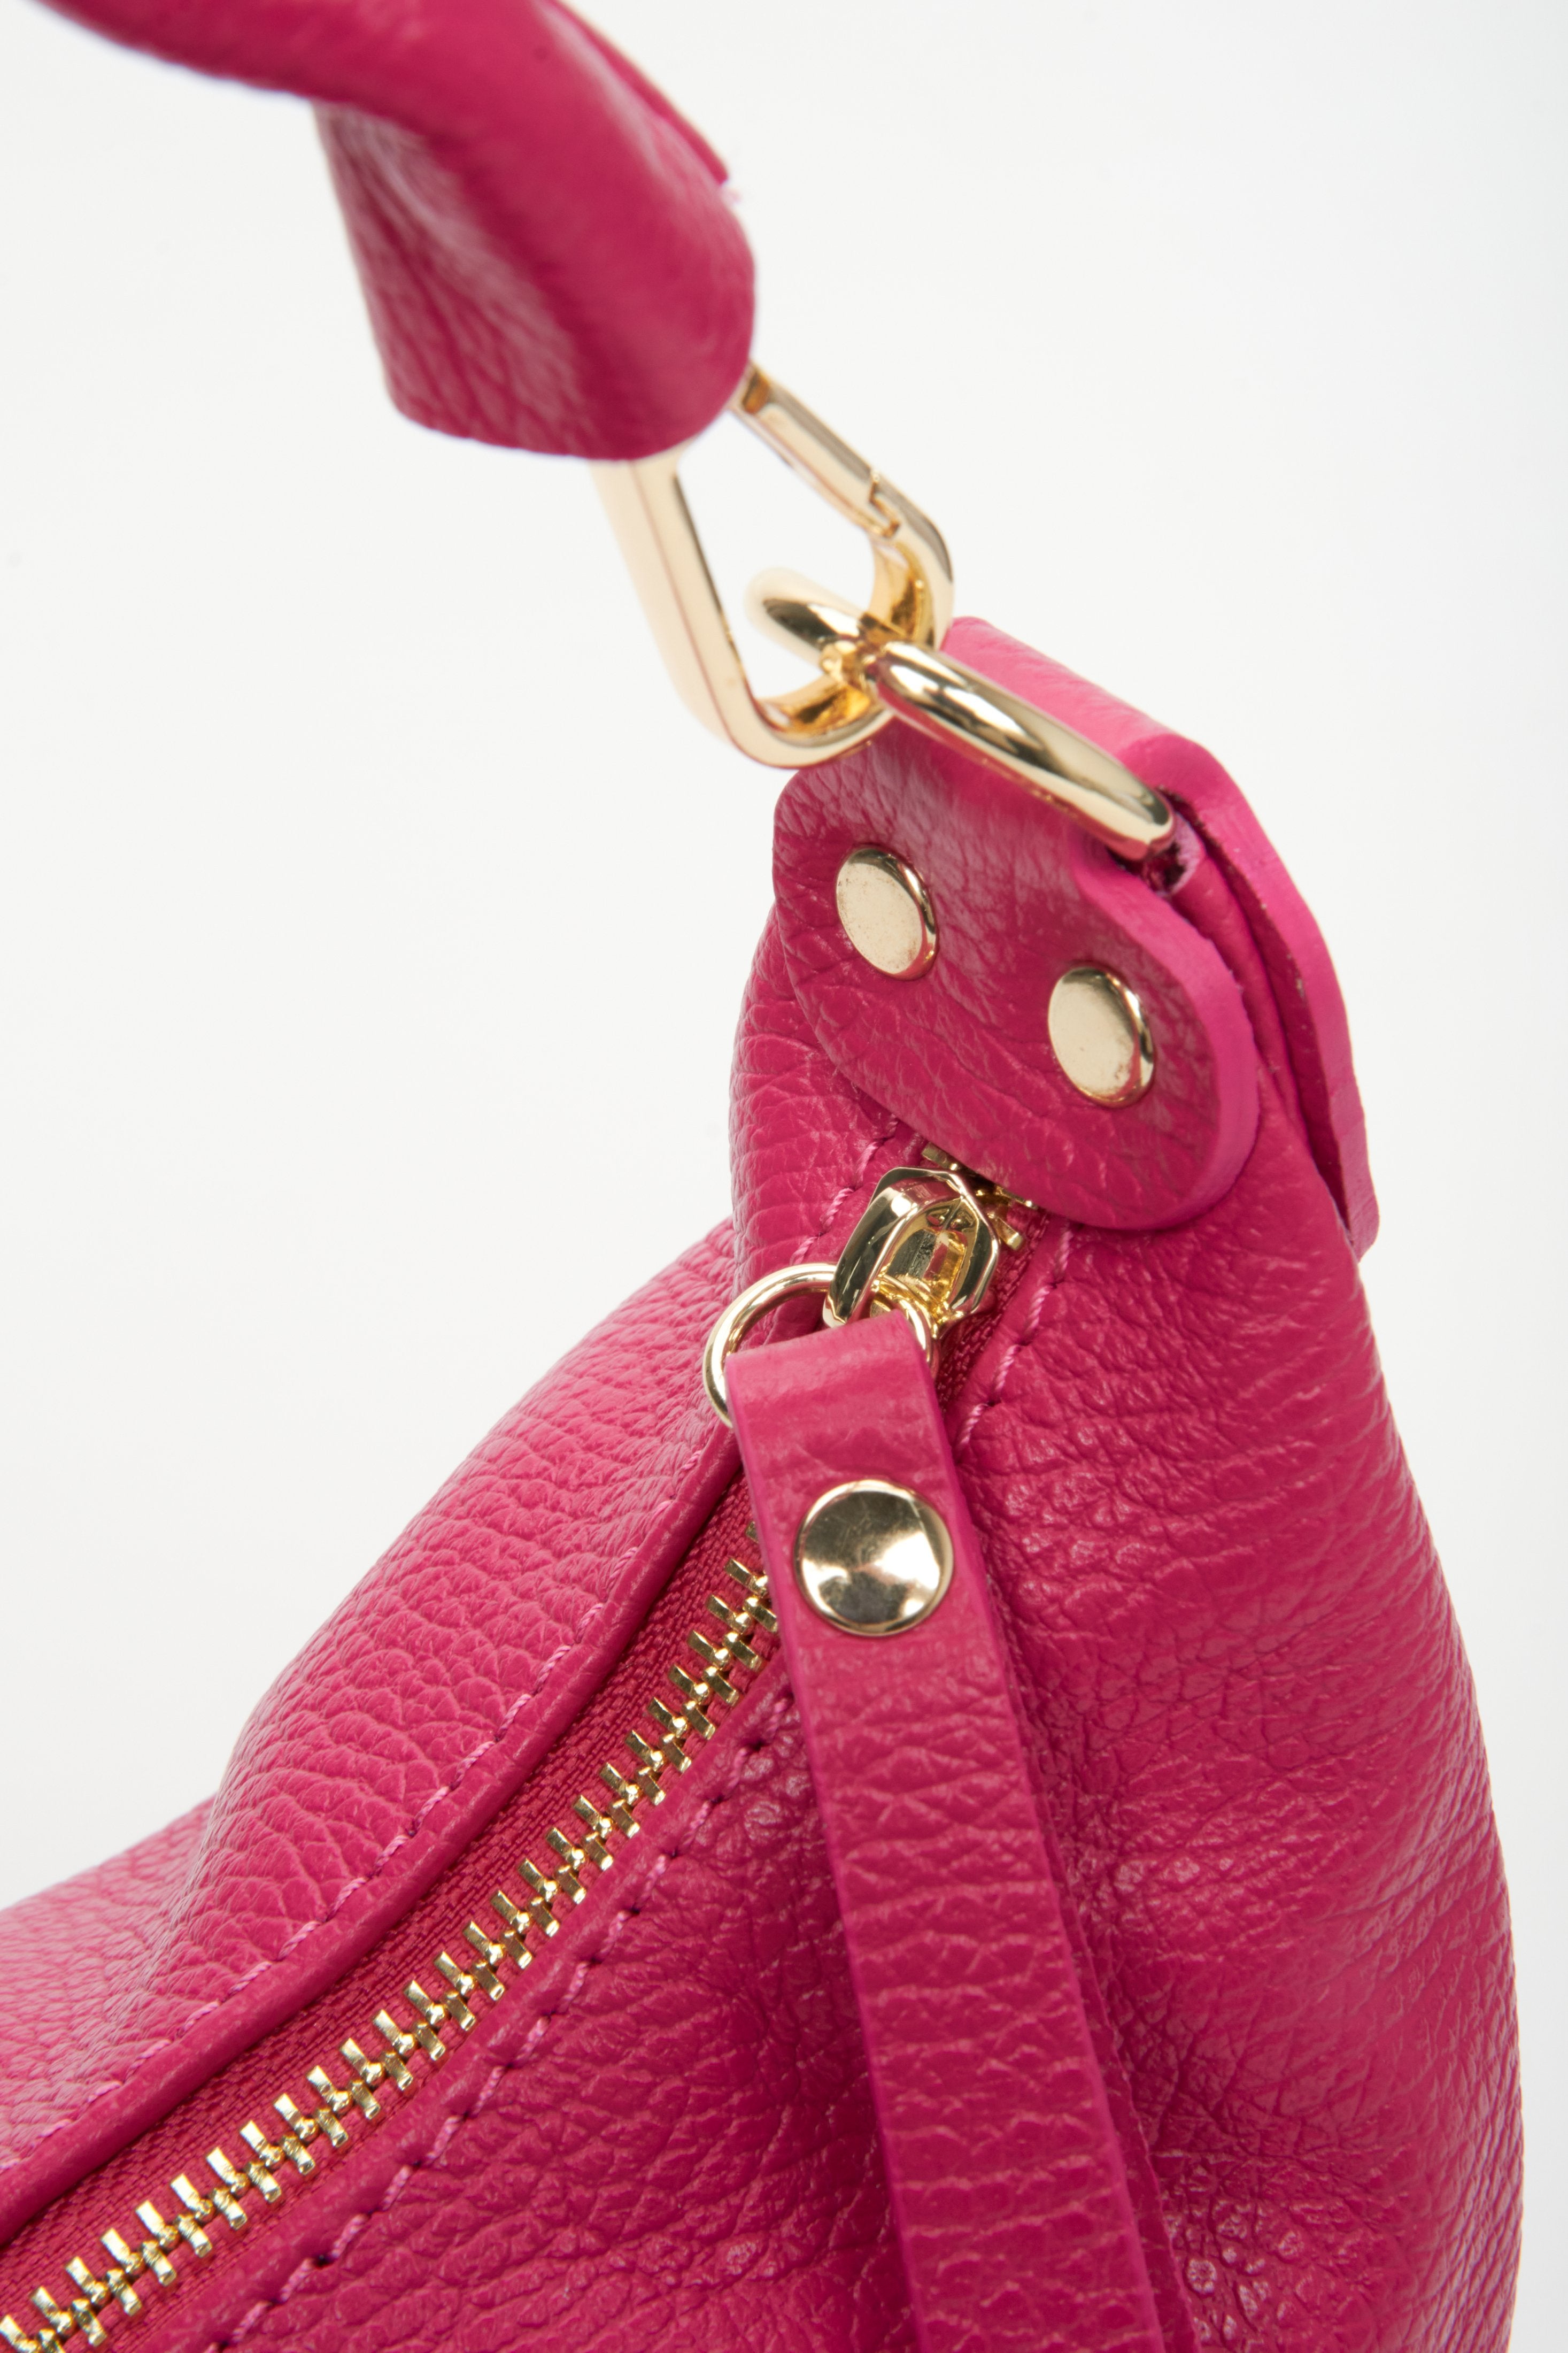 Różowa torebka damska bagietka do ręki z włoskiej skóry naturalnej Estro - zbliżenie na system zapięcia i złote elementy ozdobne.